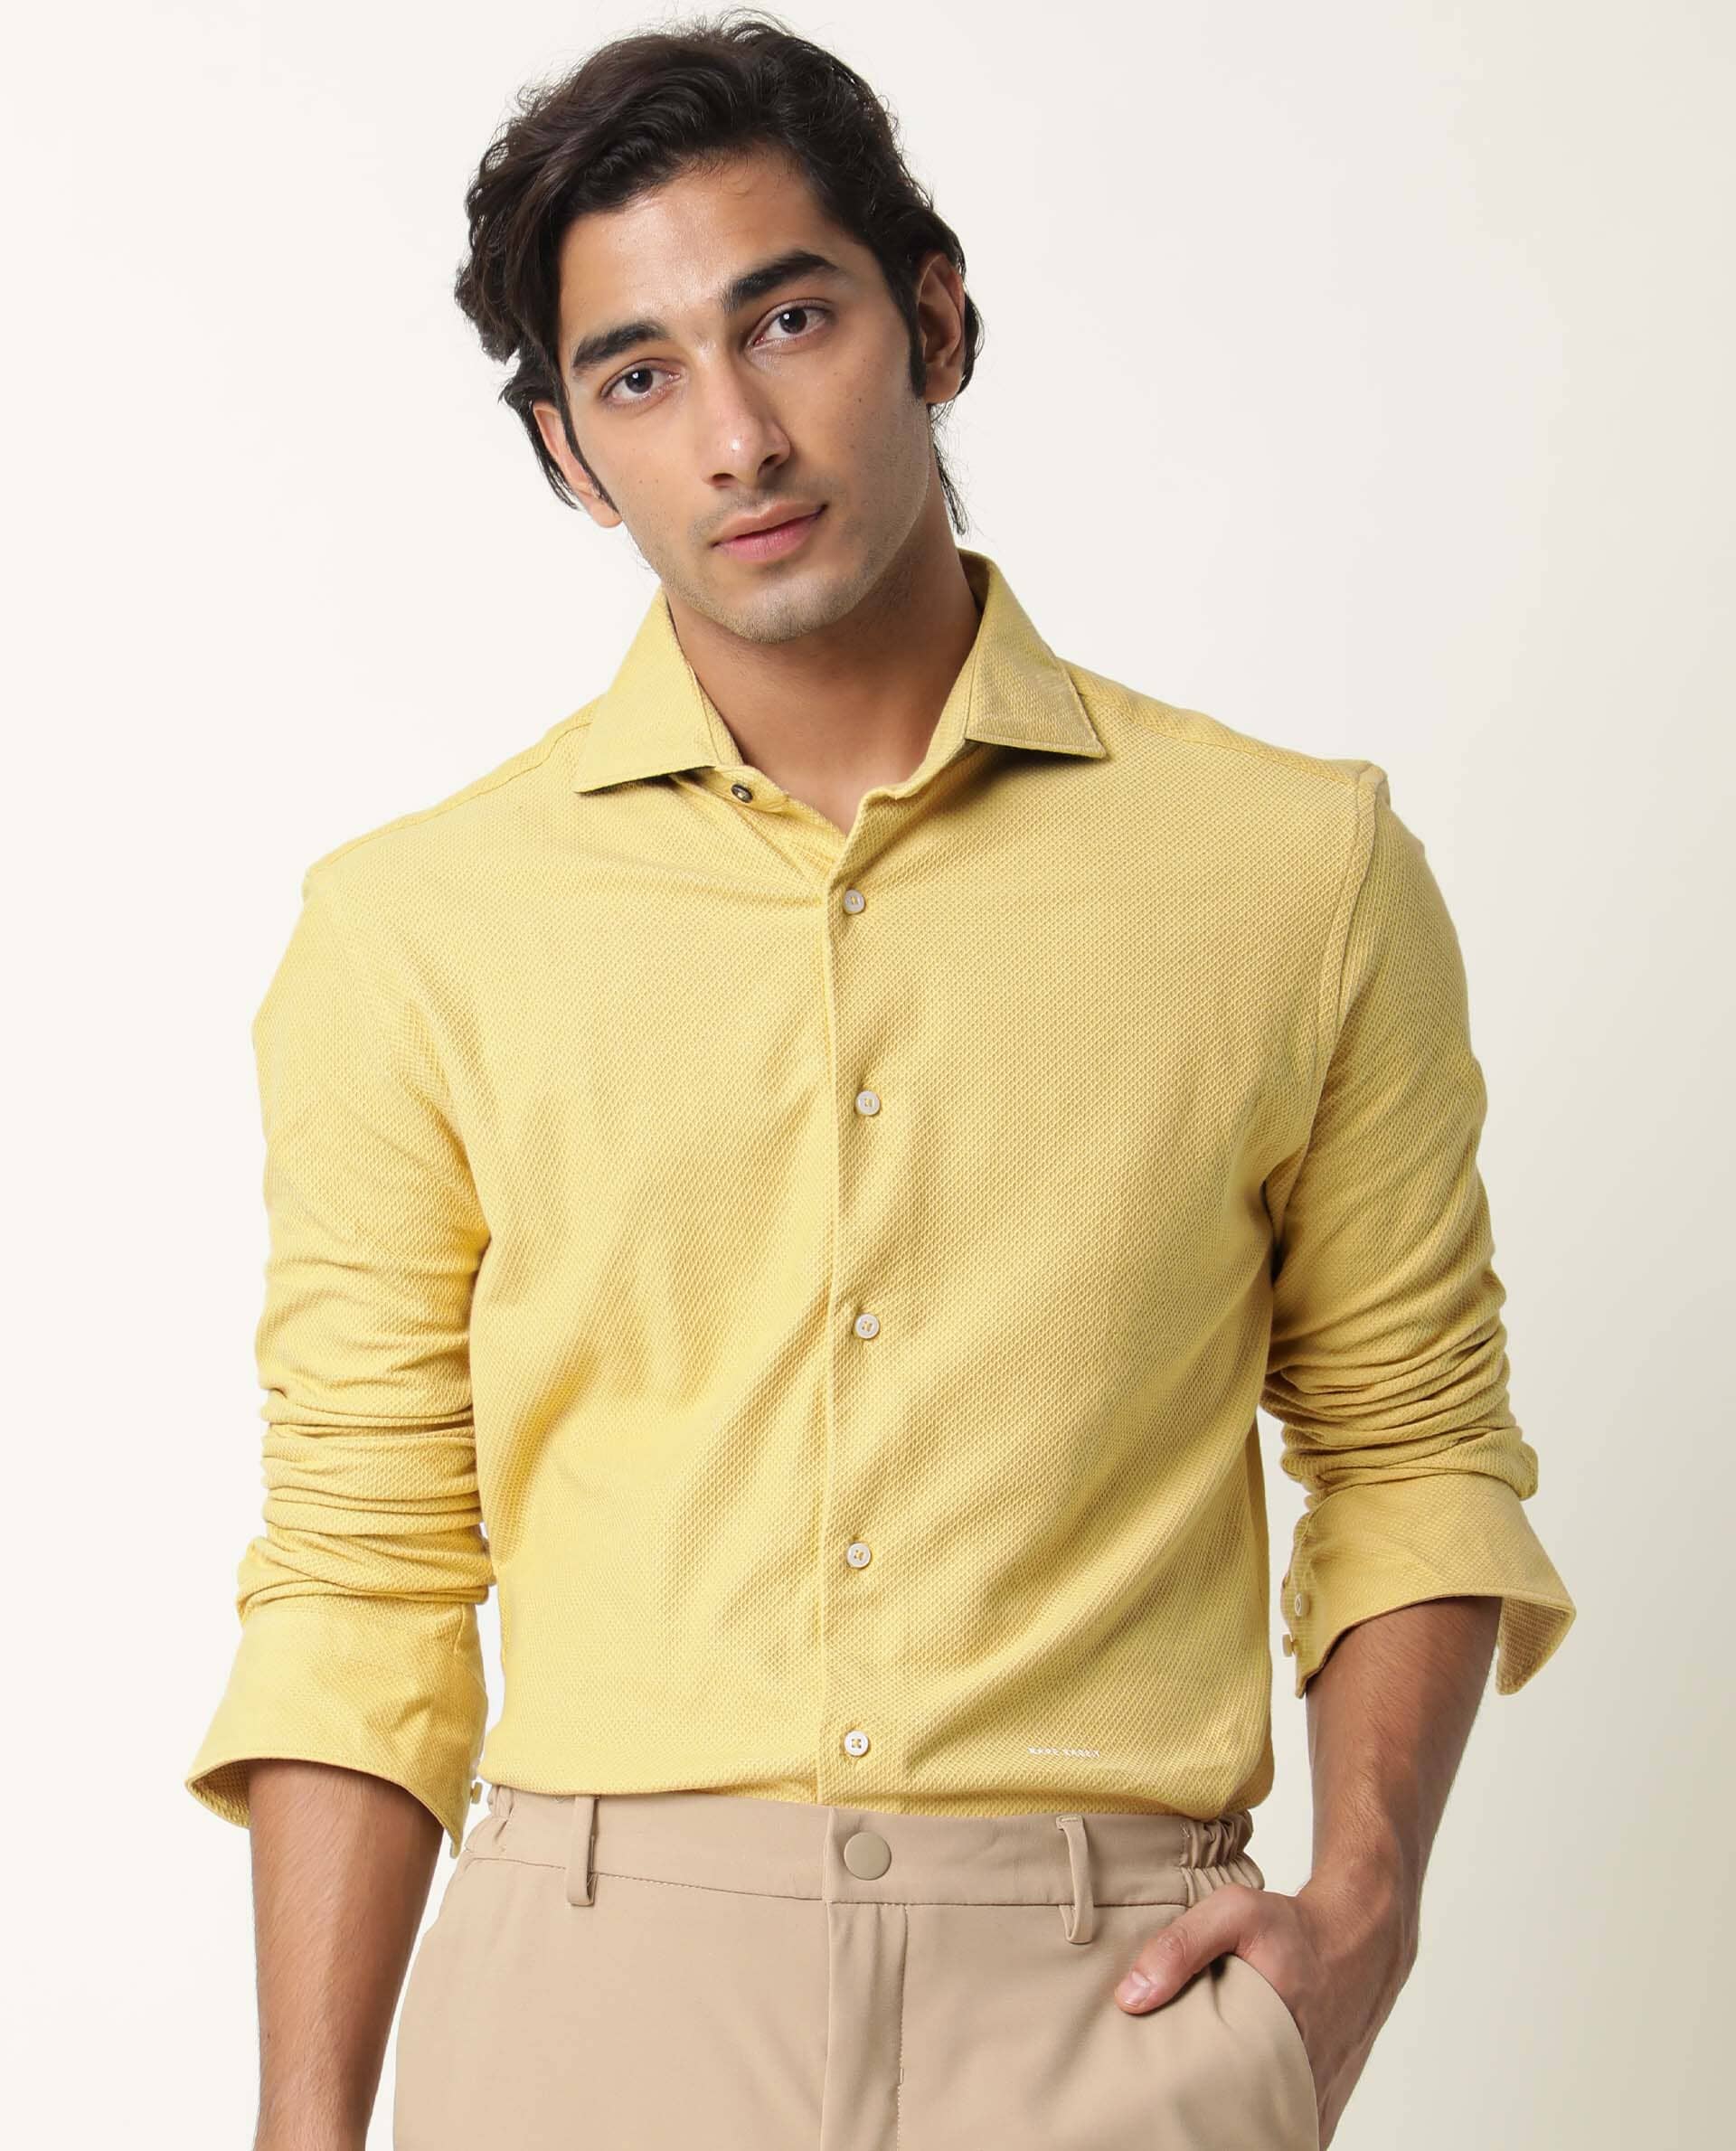 Yellow Shirt Matching Pant Ideas || Yellow Shirts Combination Pants -  YouTube